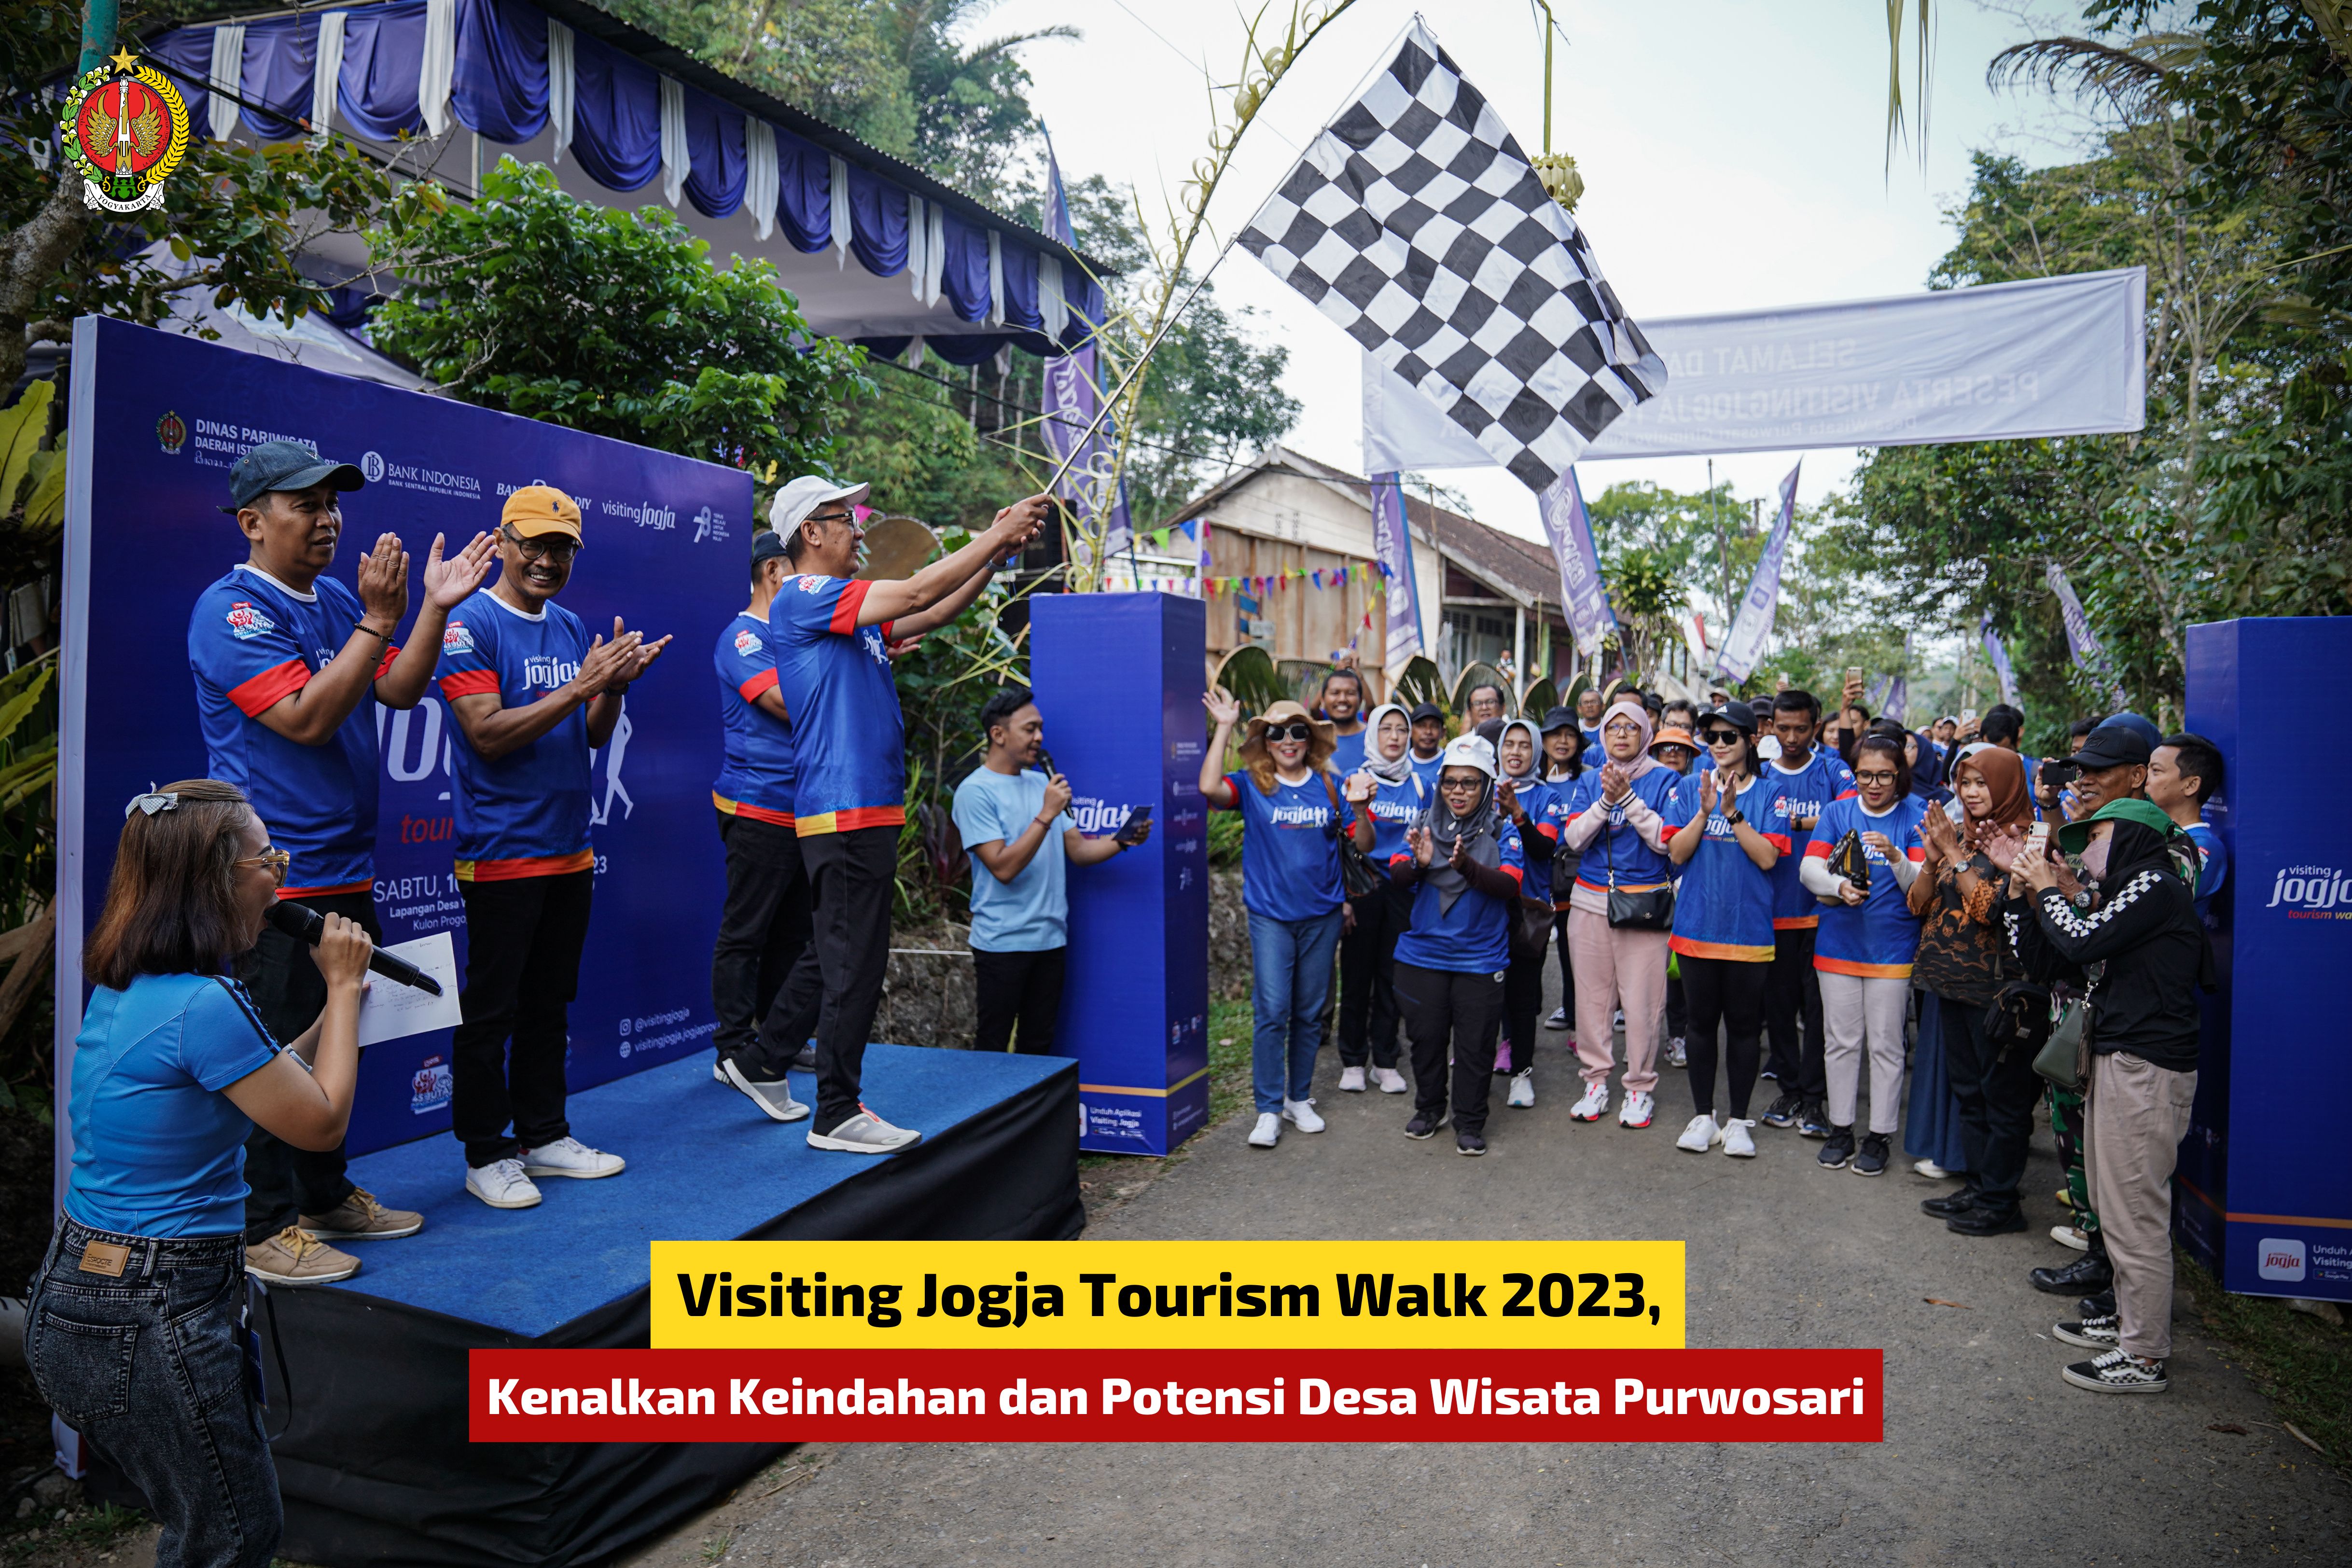  Visiting Jogja Tourism Walk 2023, Kenalkan Keindahan dan Potensi Desa Wisata Purwosari